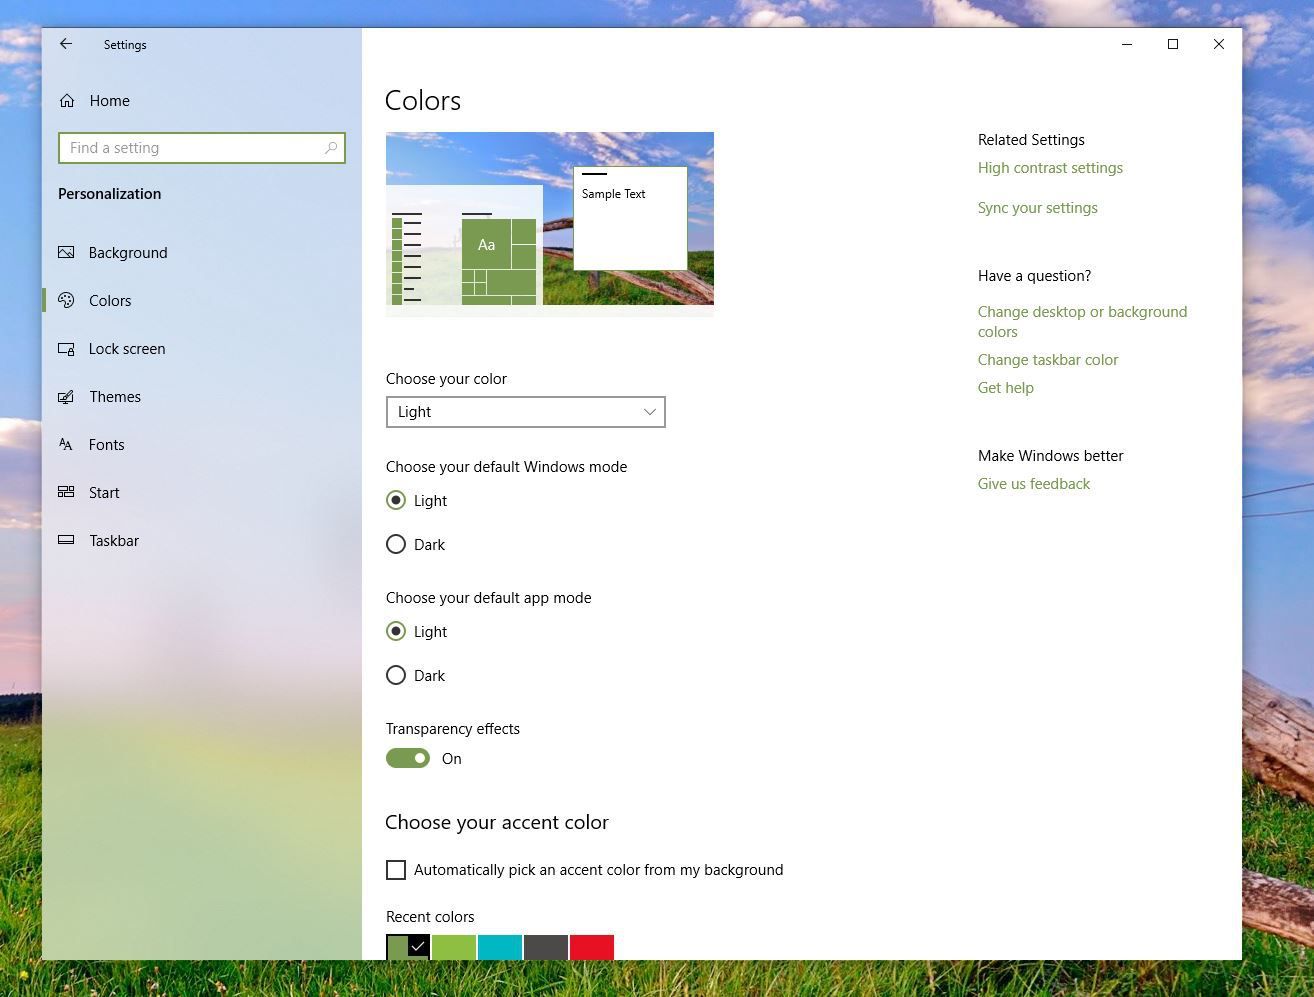 Снимок экрана с вариантами цветов в темах